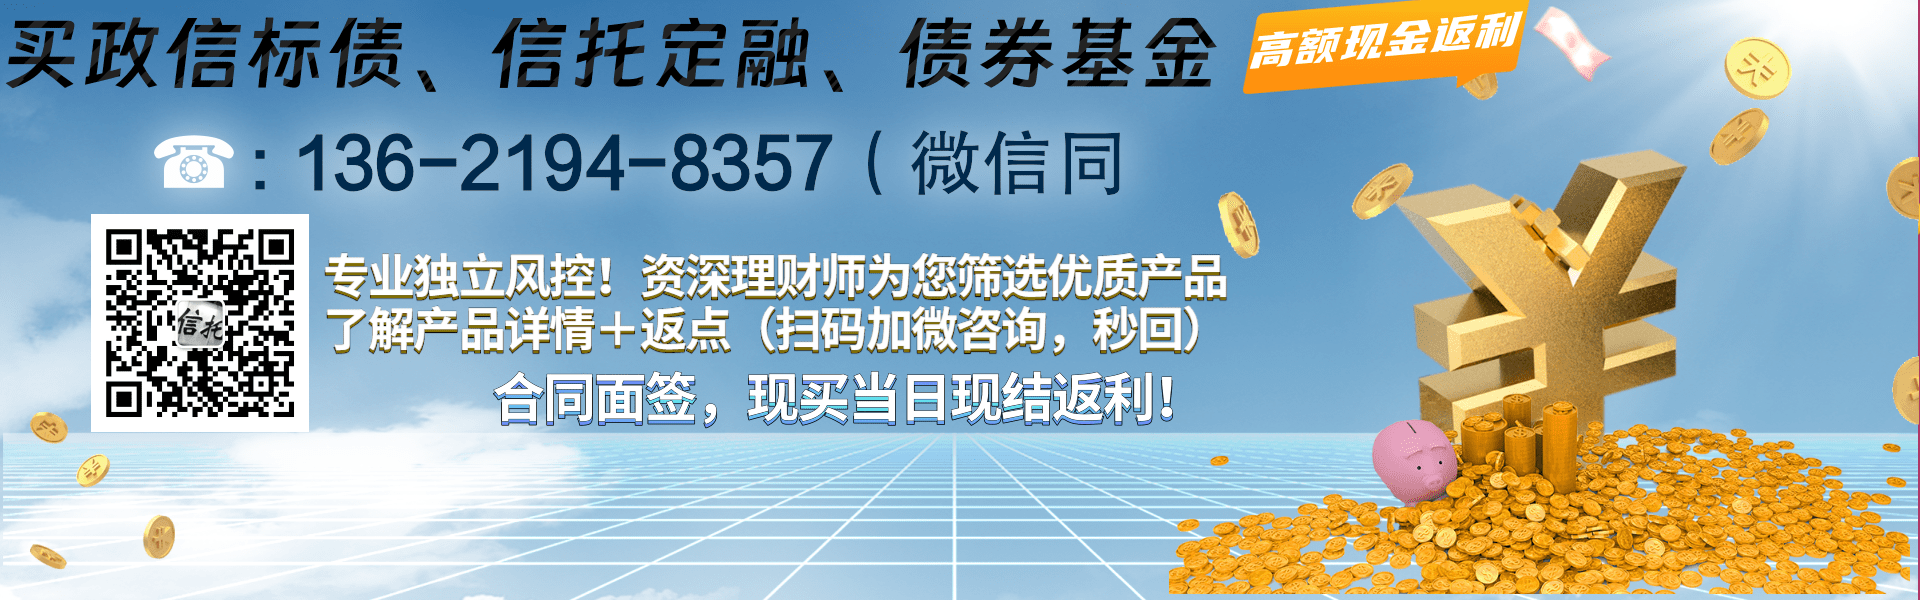 央企信托-305号重庆长寿标债集合信托计划